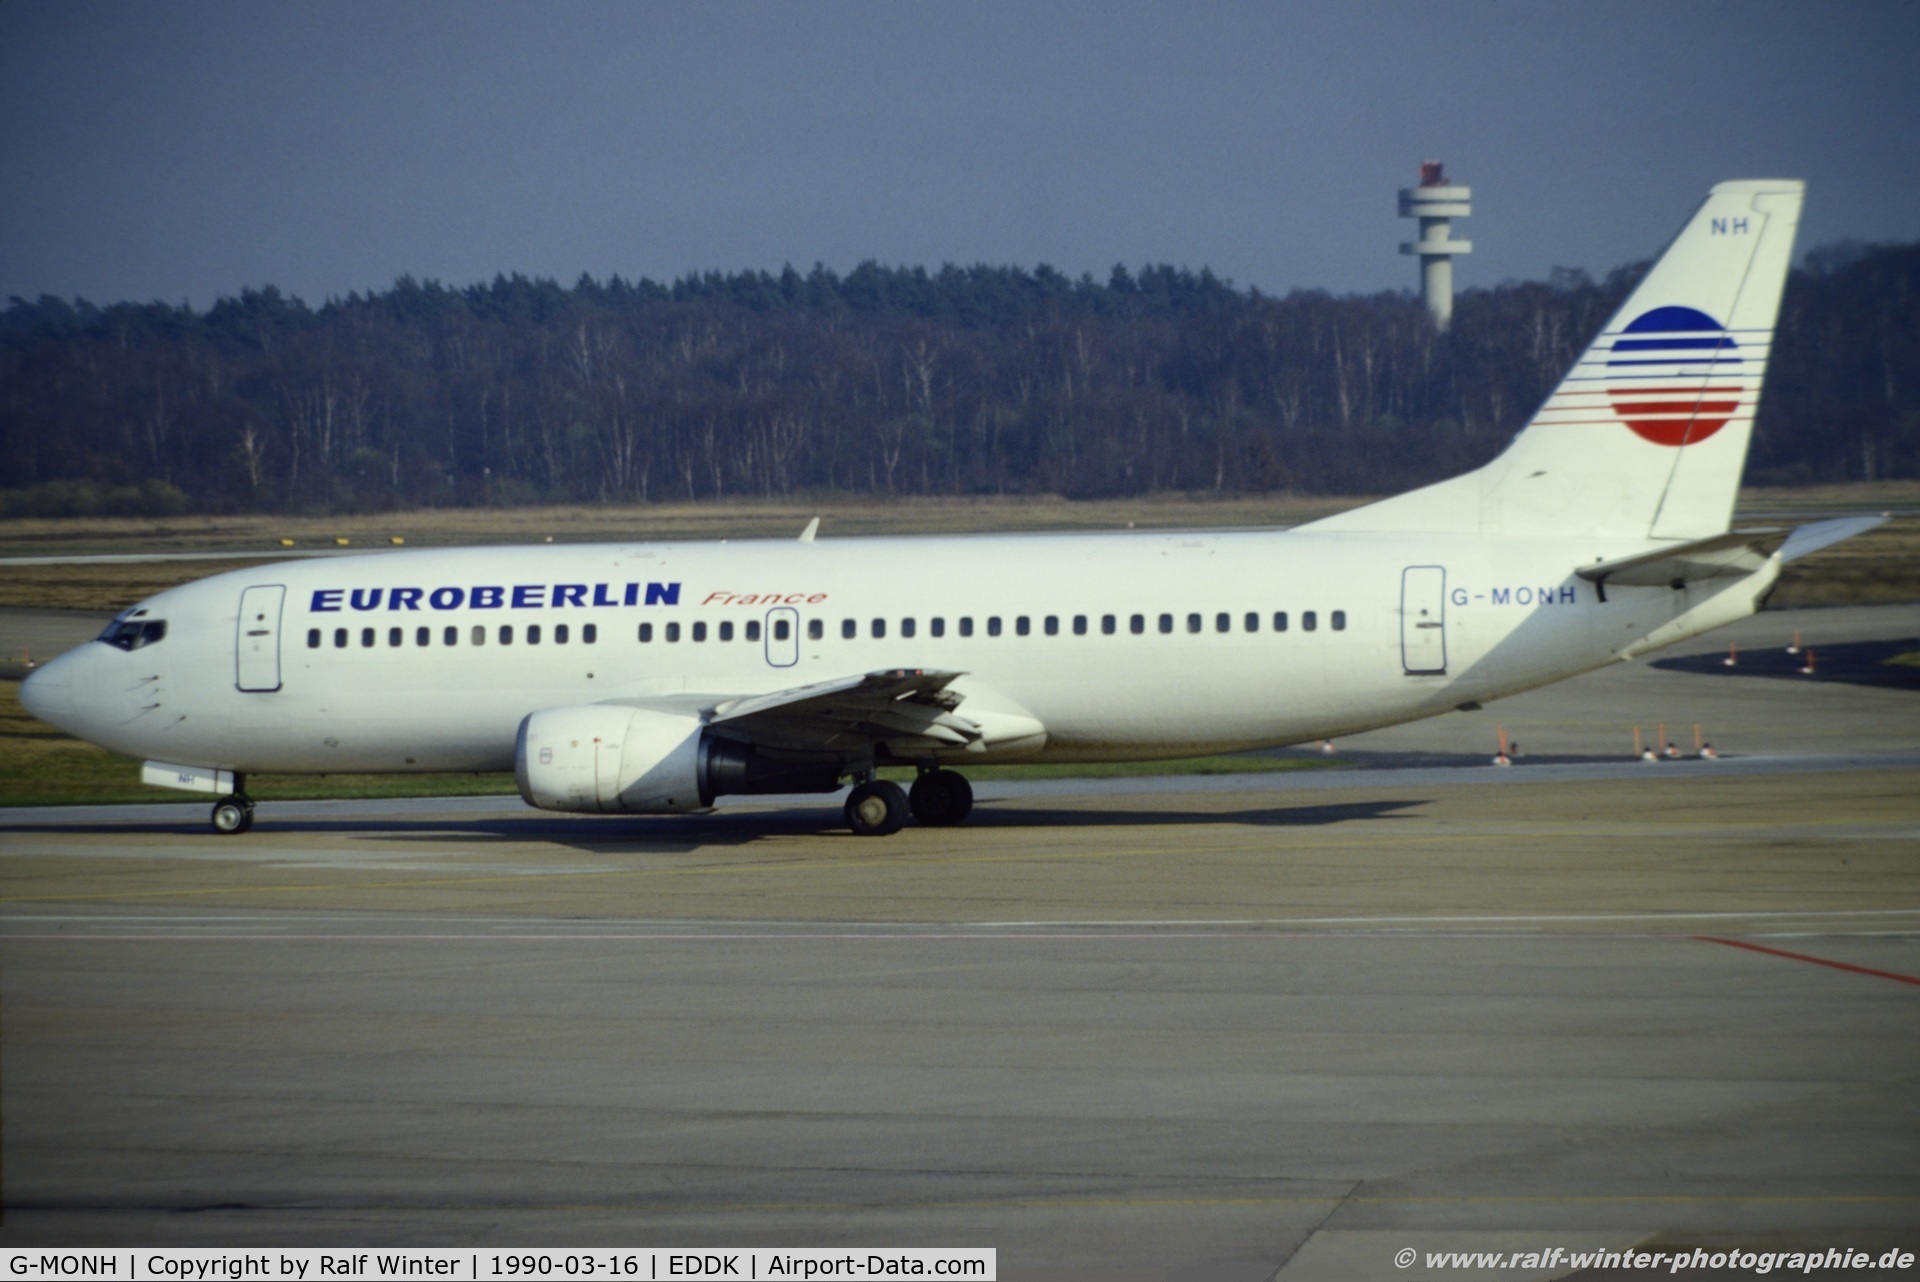 G-MONH, 1986 Boeing 737-3Y0 C/N 23498, Boeing 737-3Y0 - EE EEB Euroberlin France - 23498 - G-MONH - 16.03.1990 - CGN